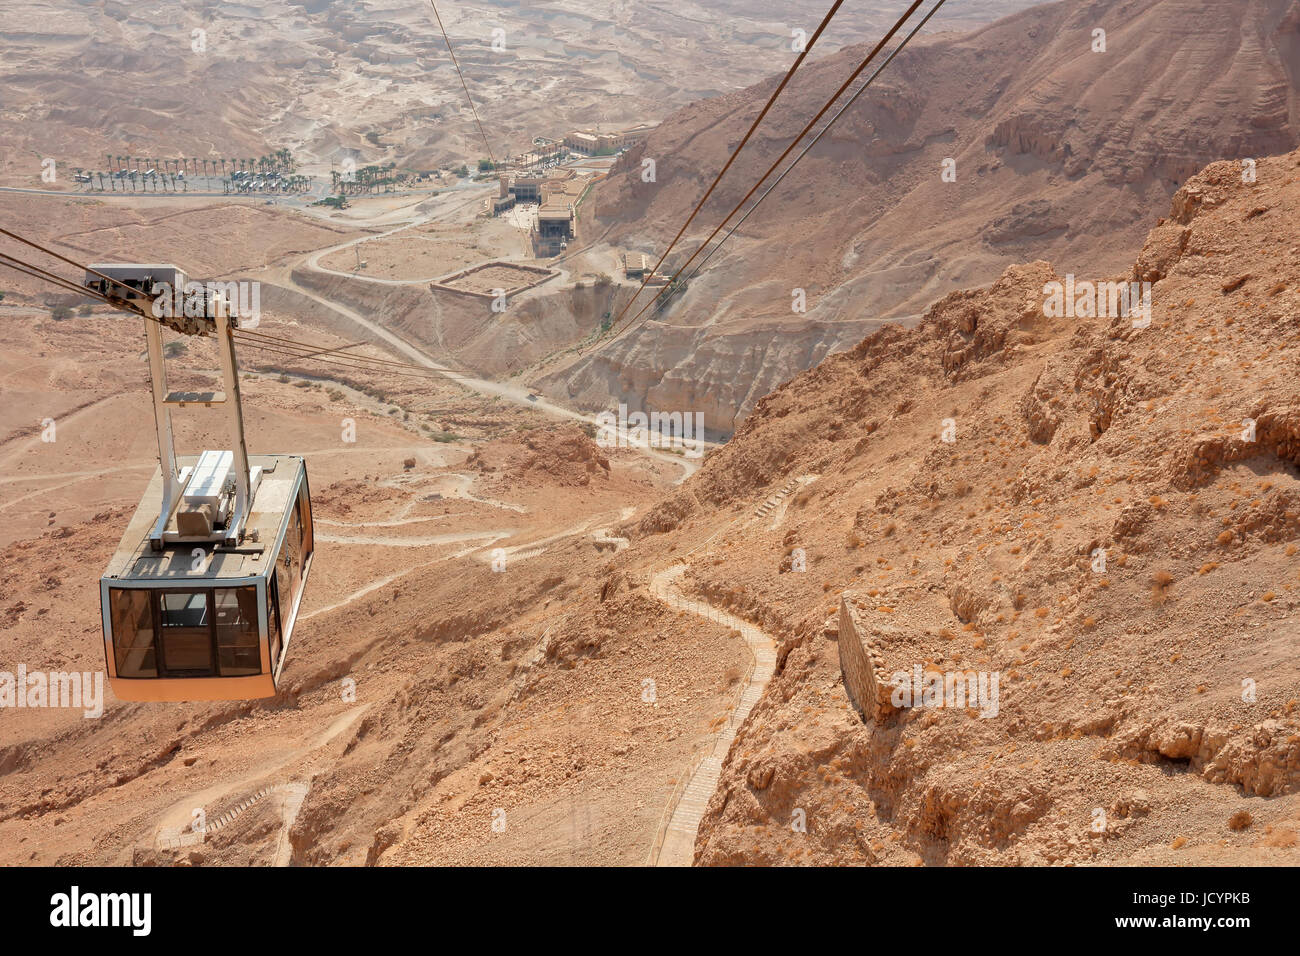 Wüstenlandschaft mit Seilbahn der Luftseilbahn Masada, Israel Stockfoto